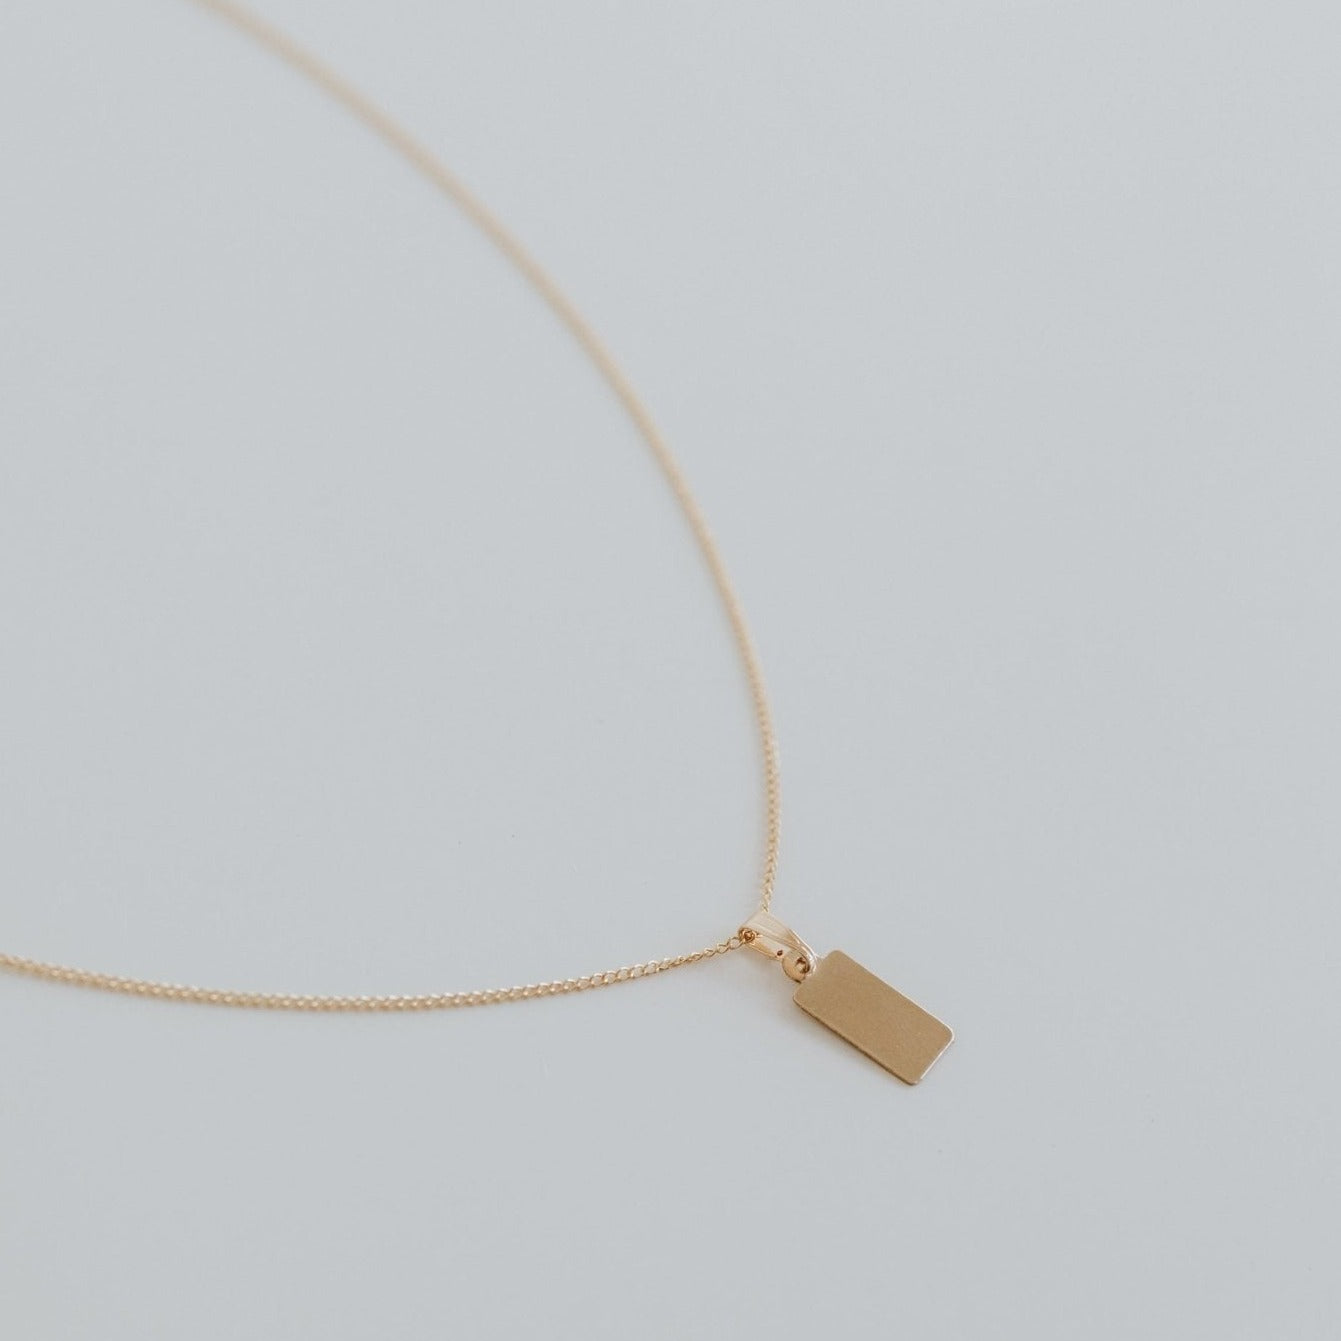 Venice Necklace - Jillian Leigh Jewellery - necklaces